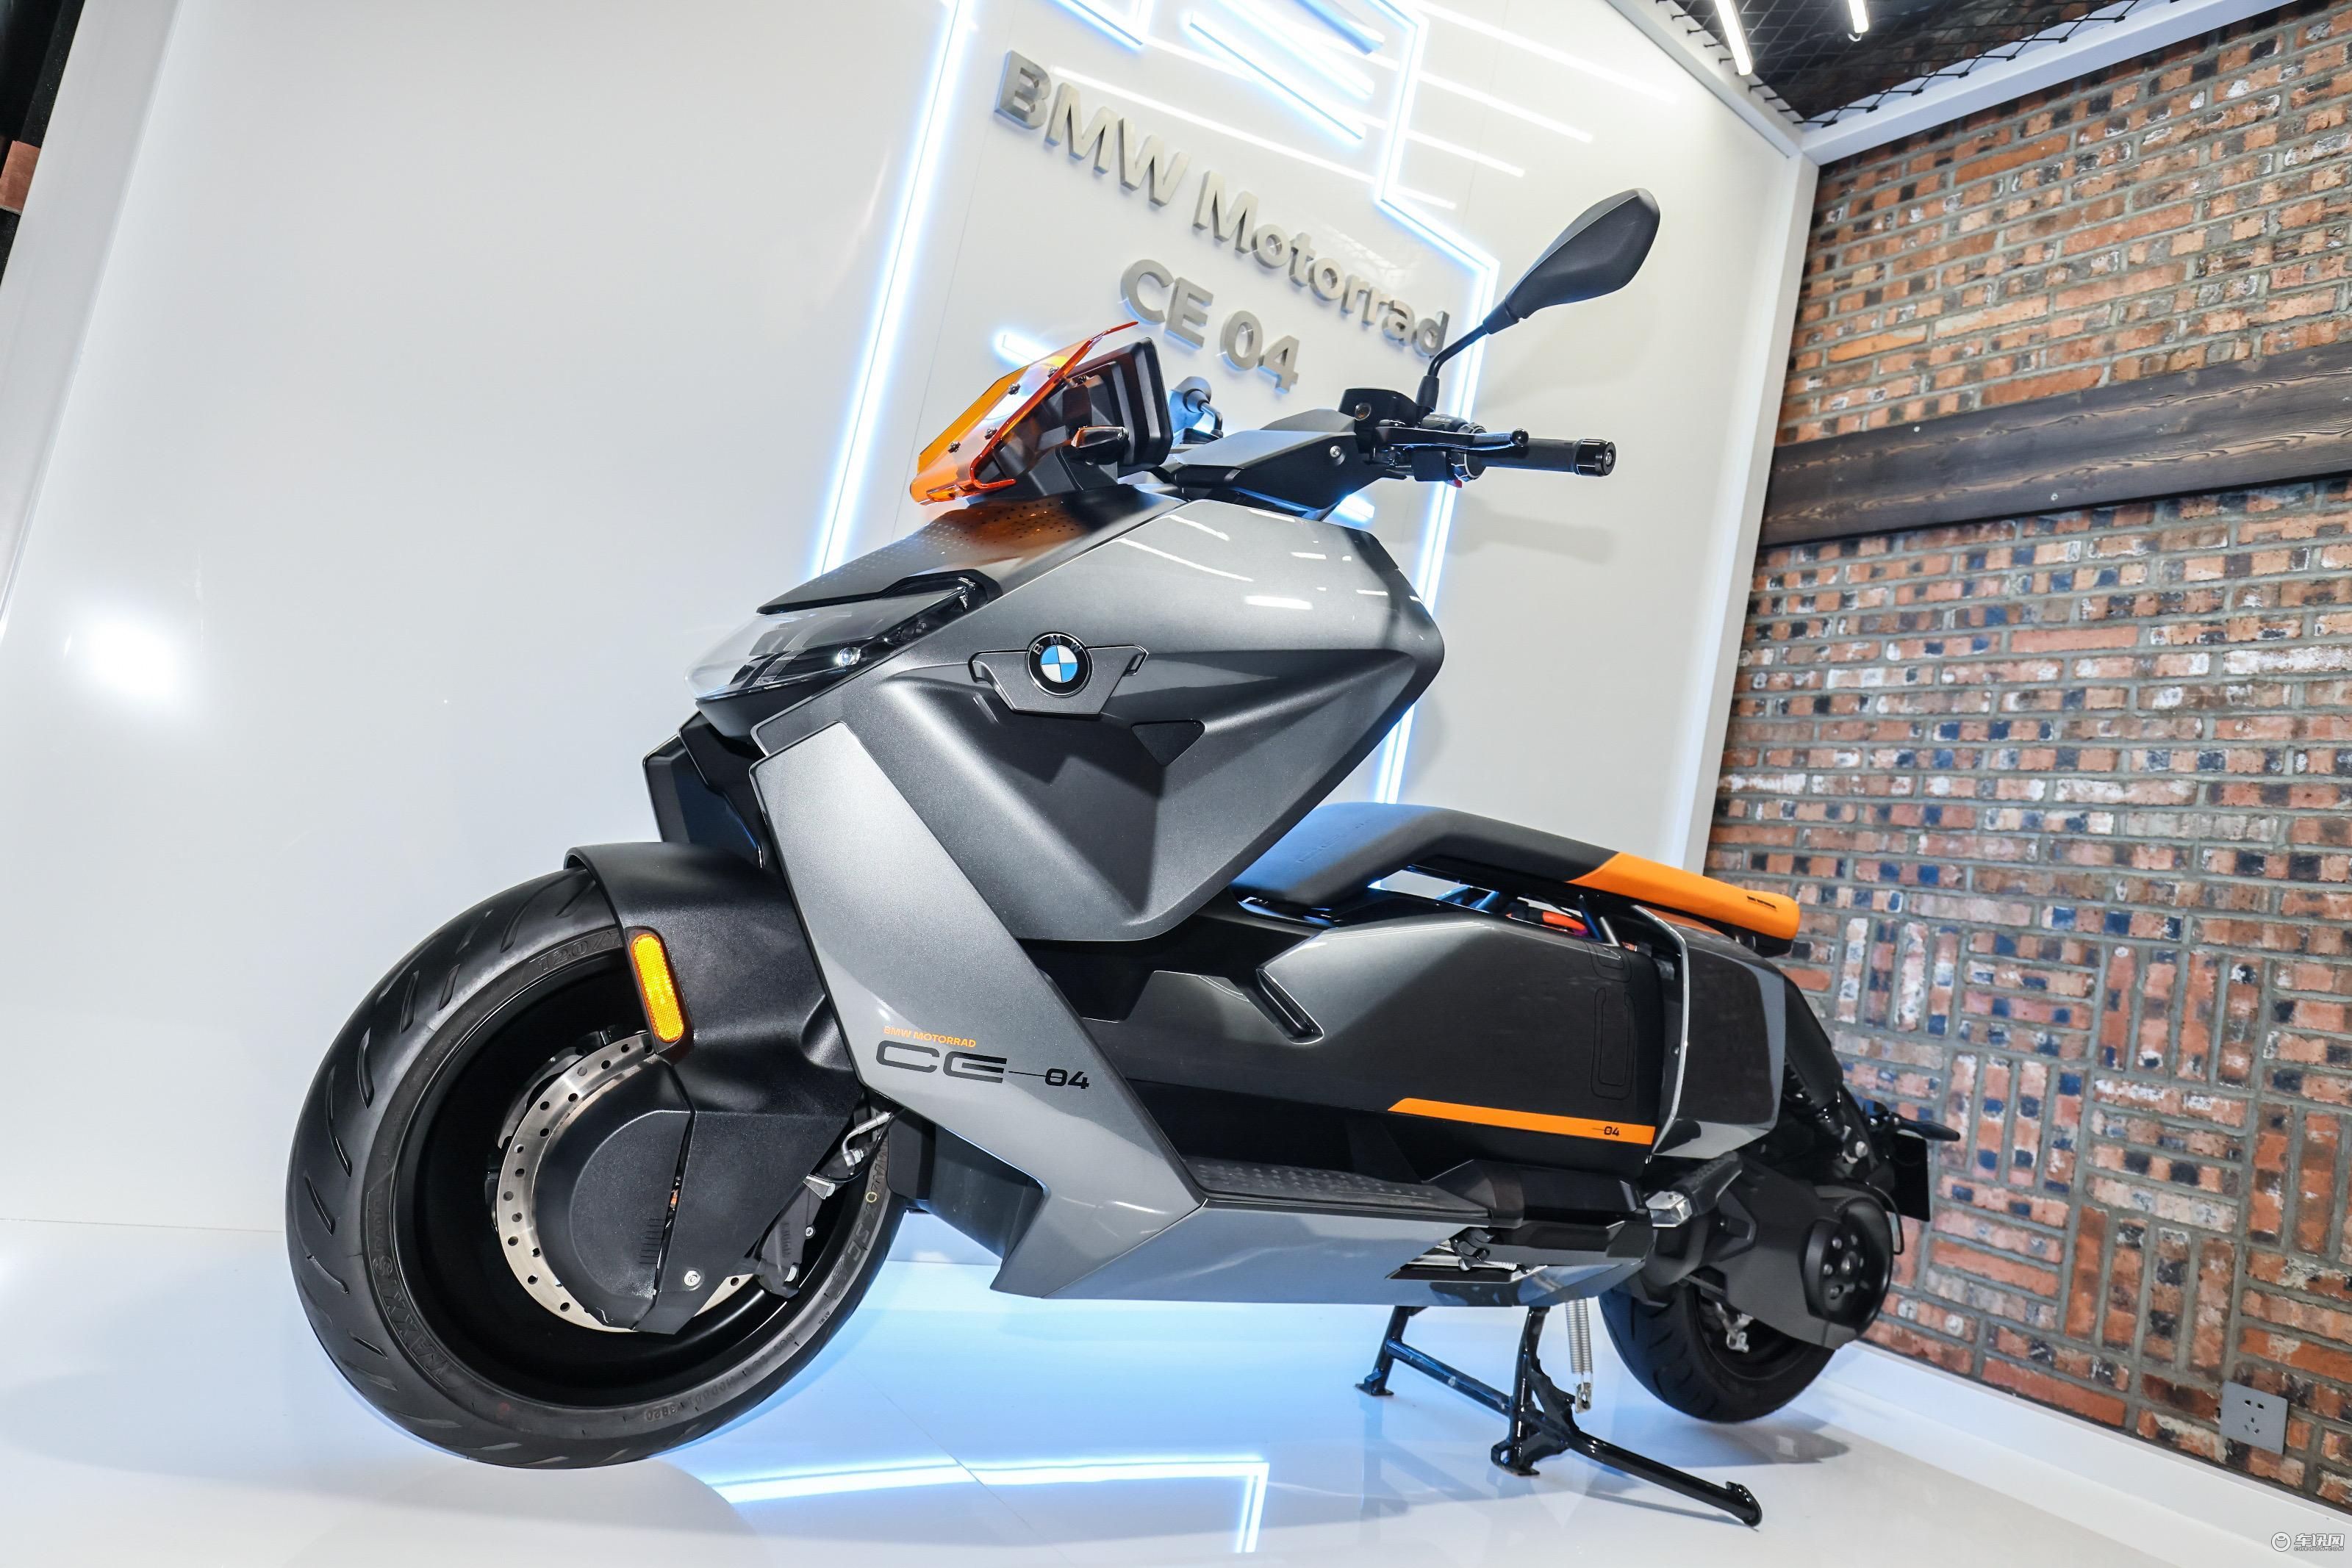 bmw第二款纯电动摩托车ce 04在国内发布 将于年内上市